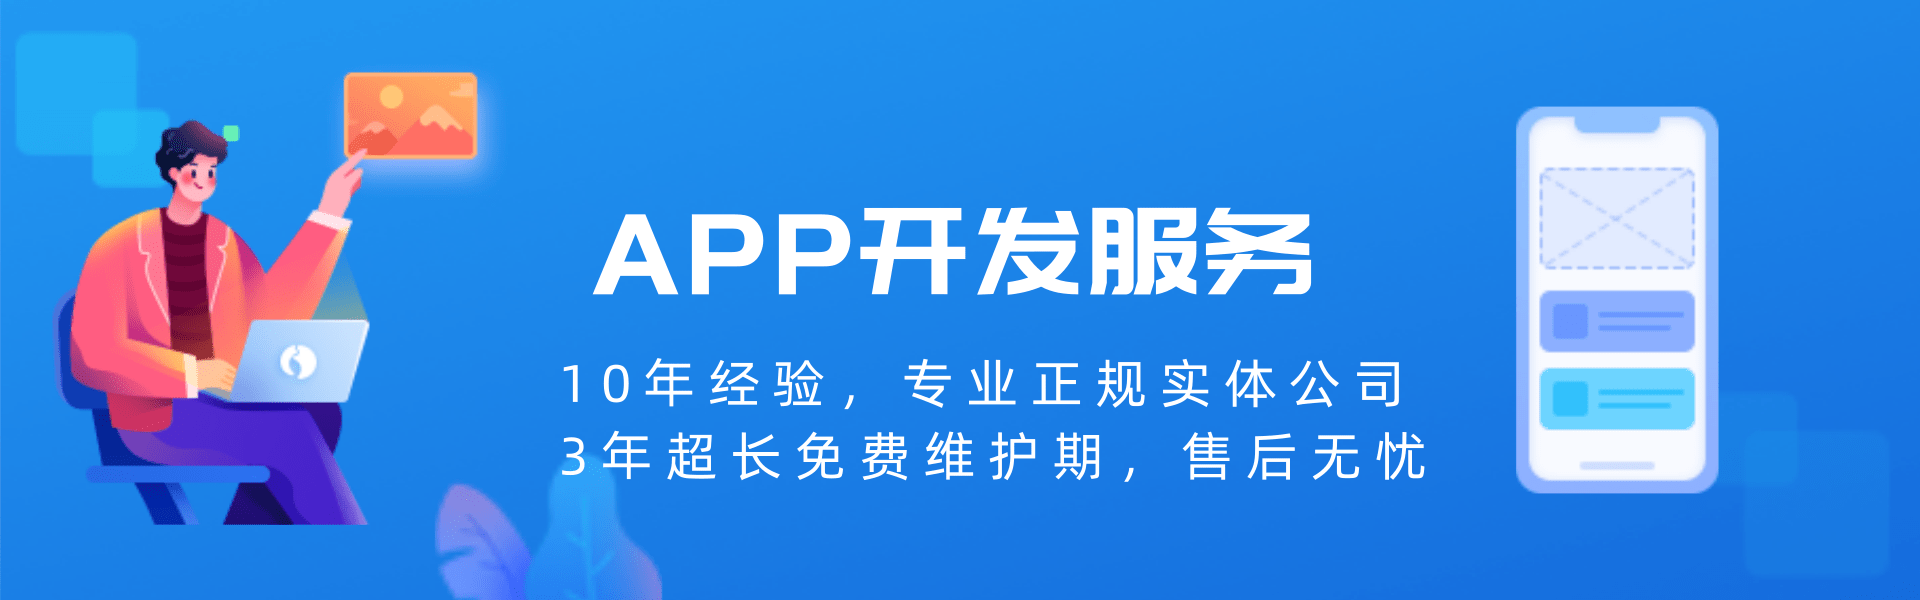 天品互联北京APP开发公司-轮播图